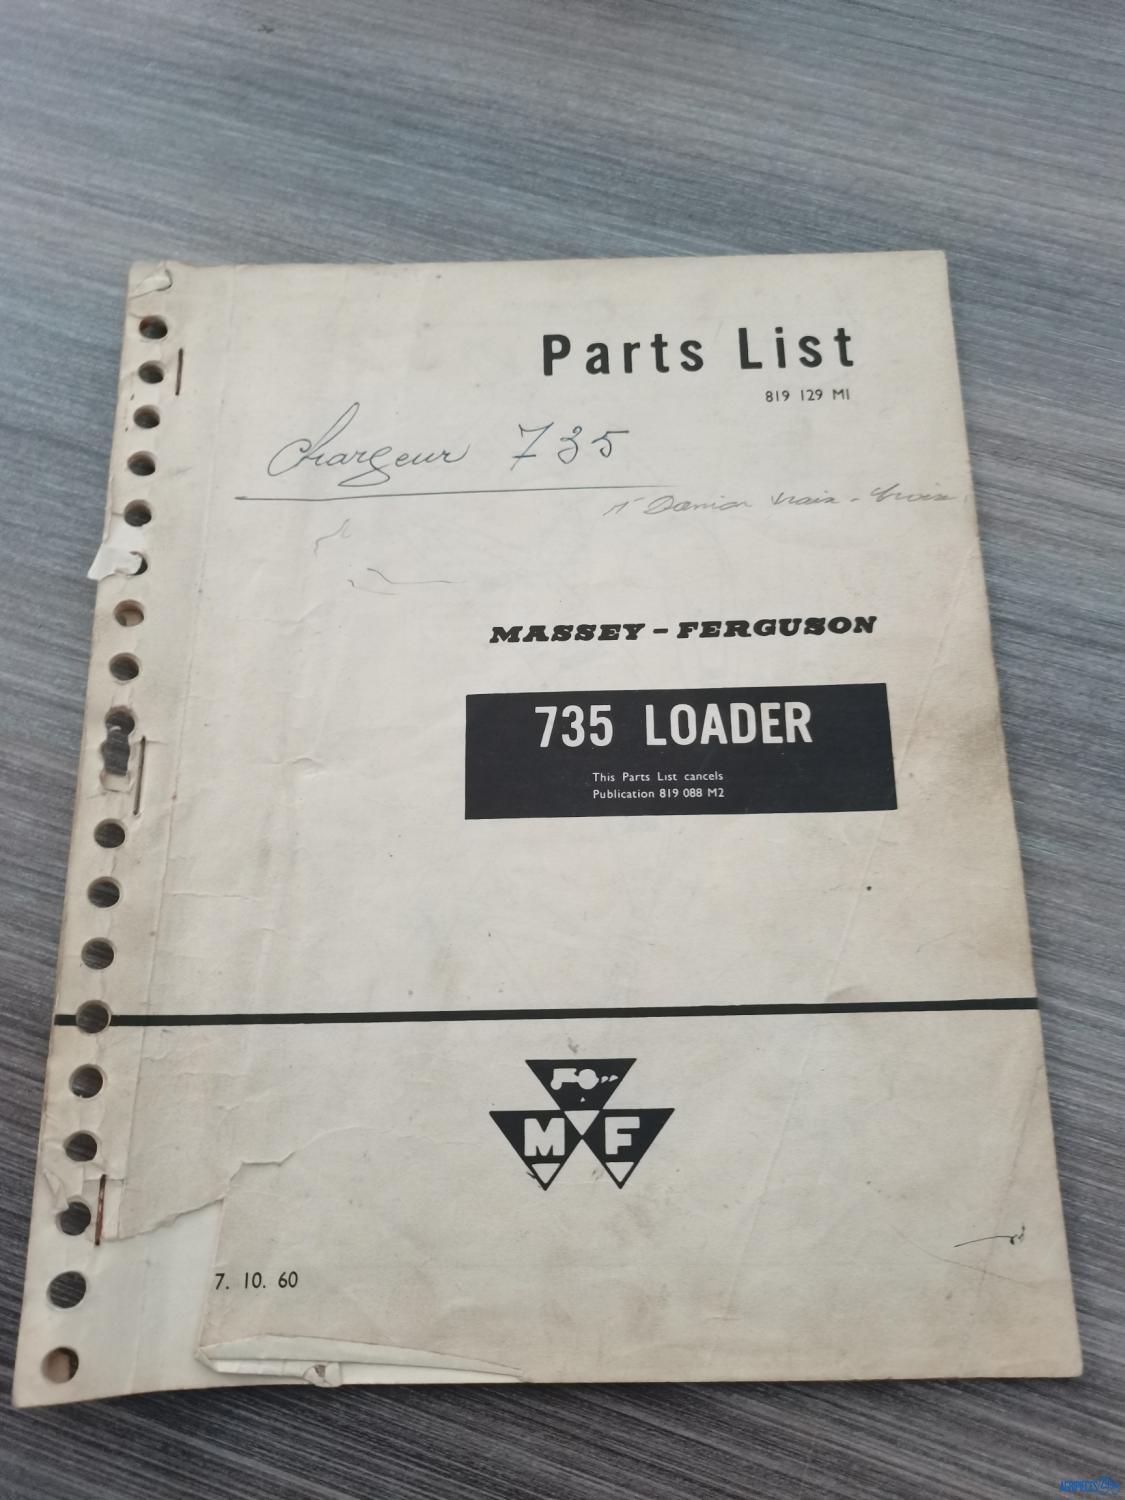 Catalogue de pièces détachées pour chargeur Massey-Ferguson 735